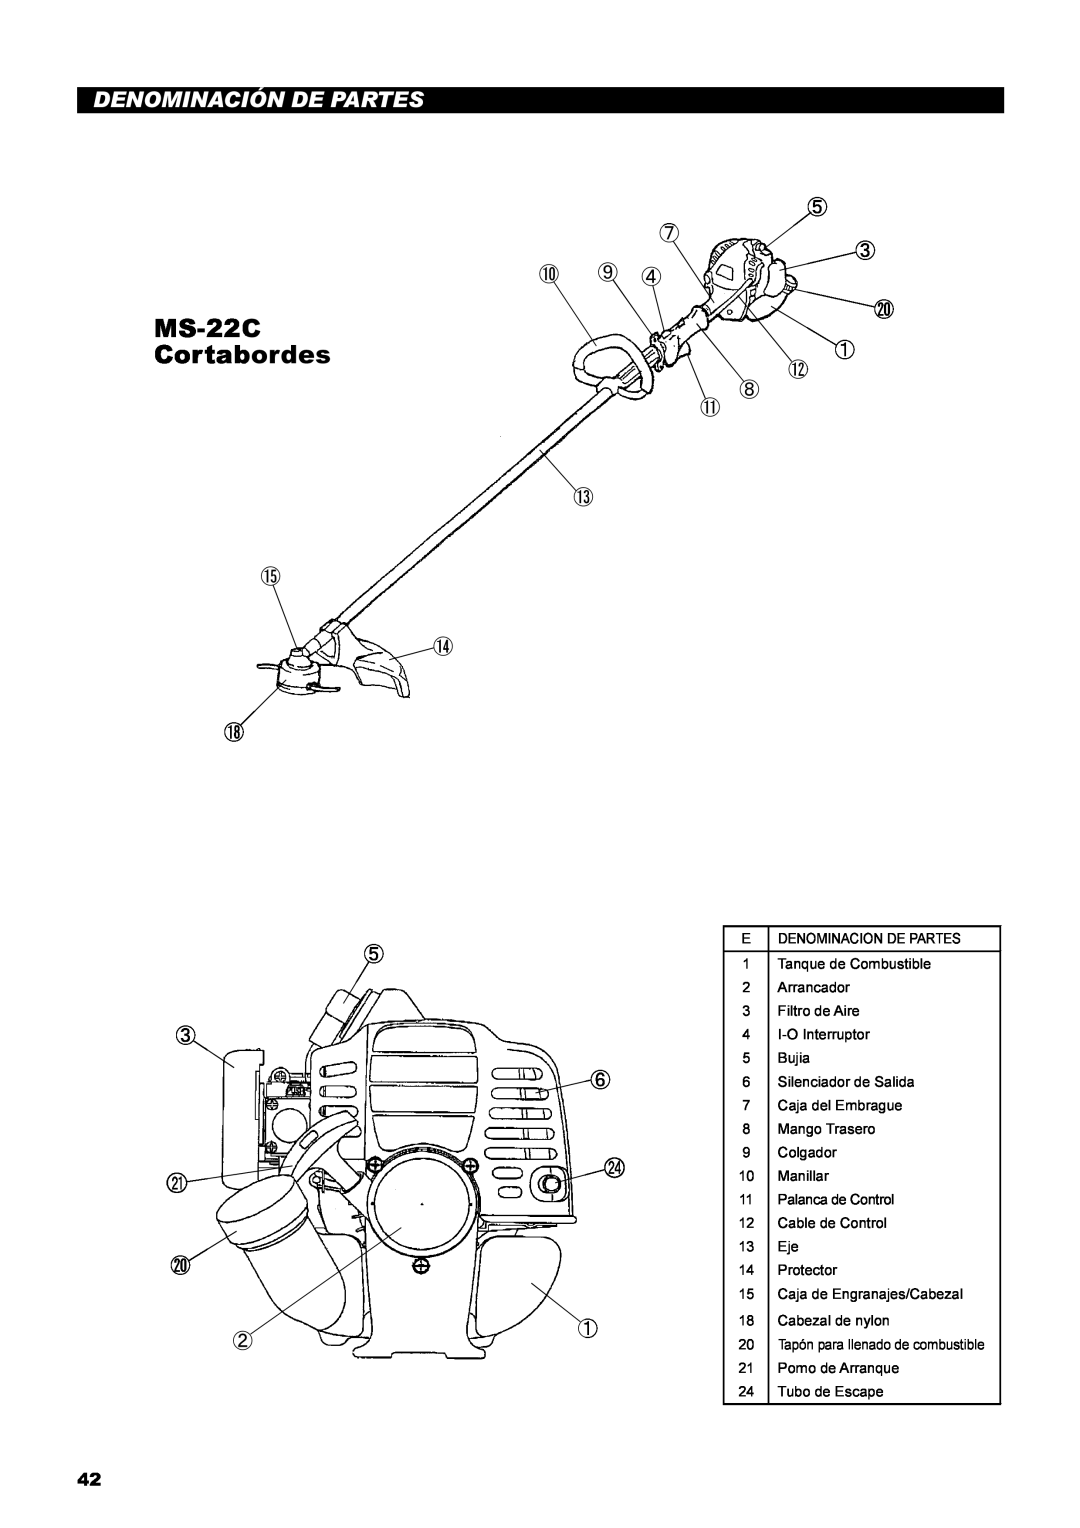 Dolmar instruction manual MS-22C Cortabordes, Denominación De Partes, ⑤ ⑦ ③ ⑩ ⑨ ④ ⑳ ① ⑫ ⑧ ⑪ ⑬, ⑮ ⑭ ⑱ 